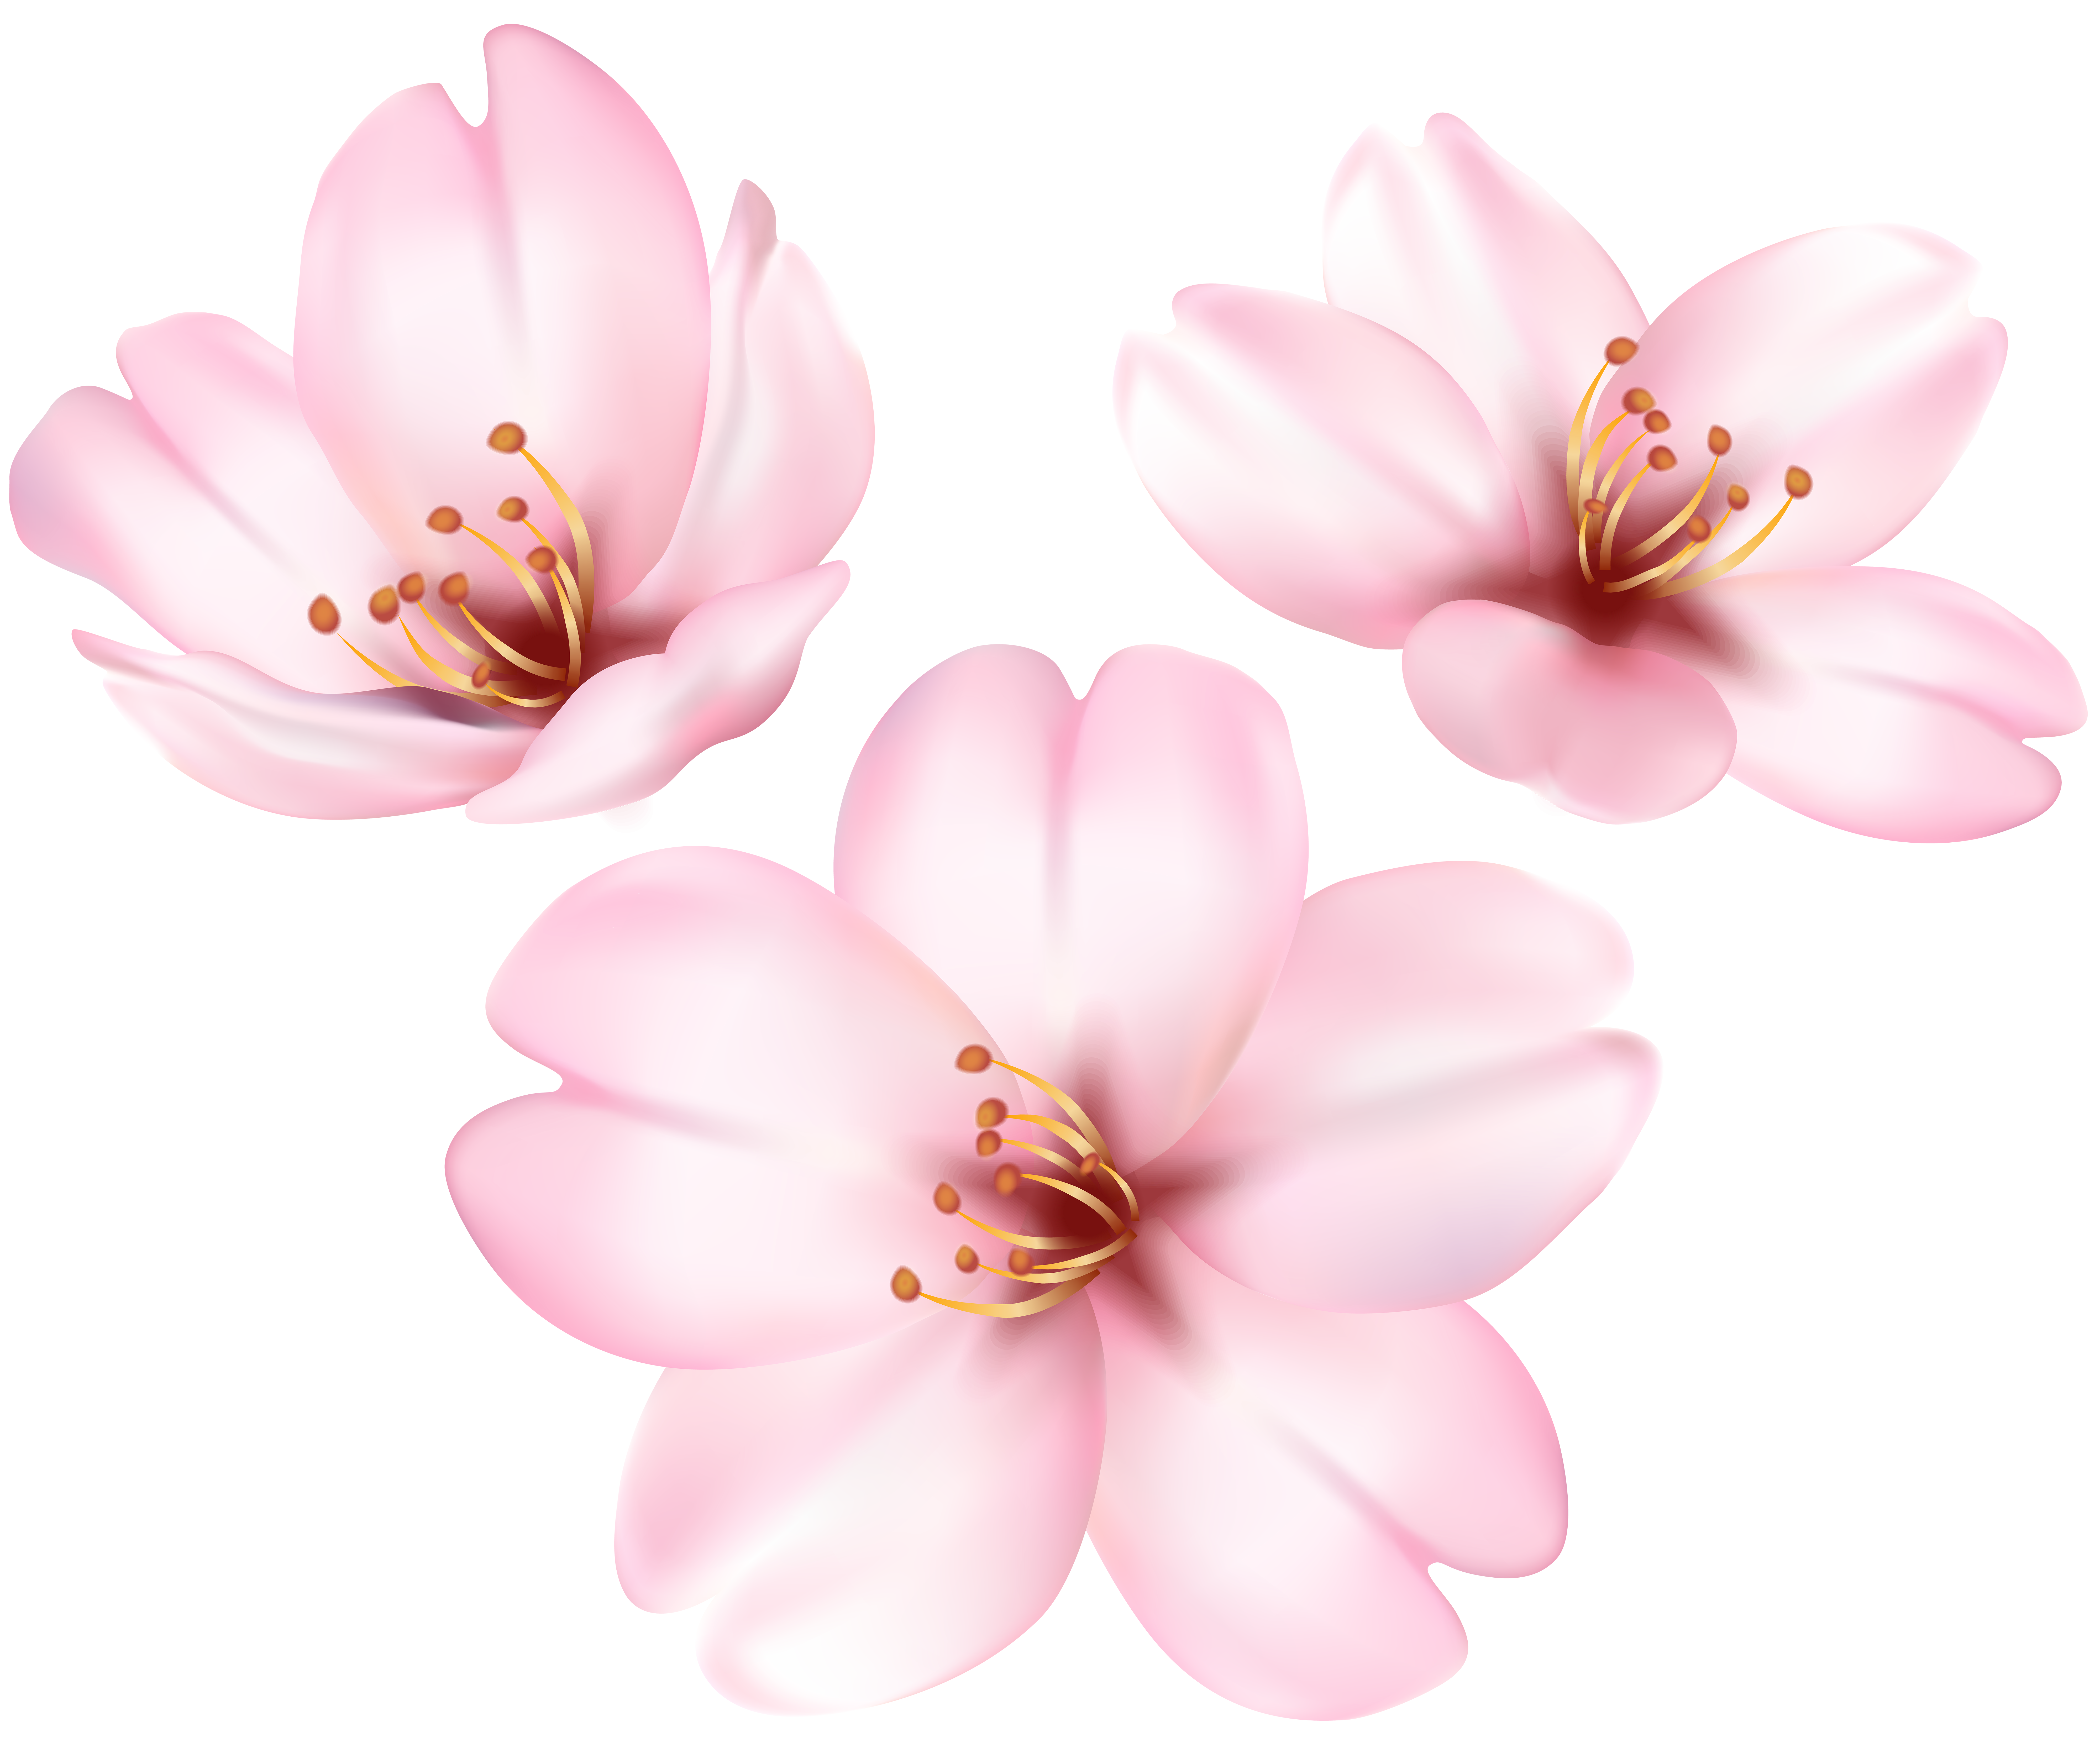 magnolia clipart pink magnolia